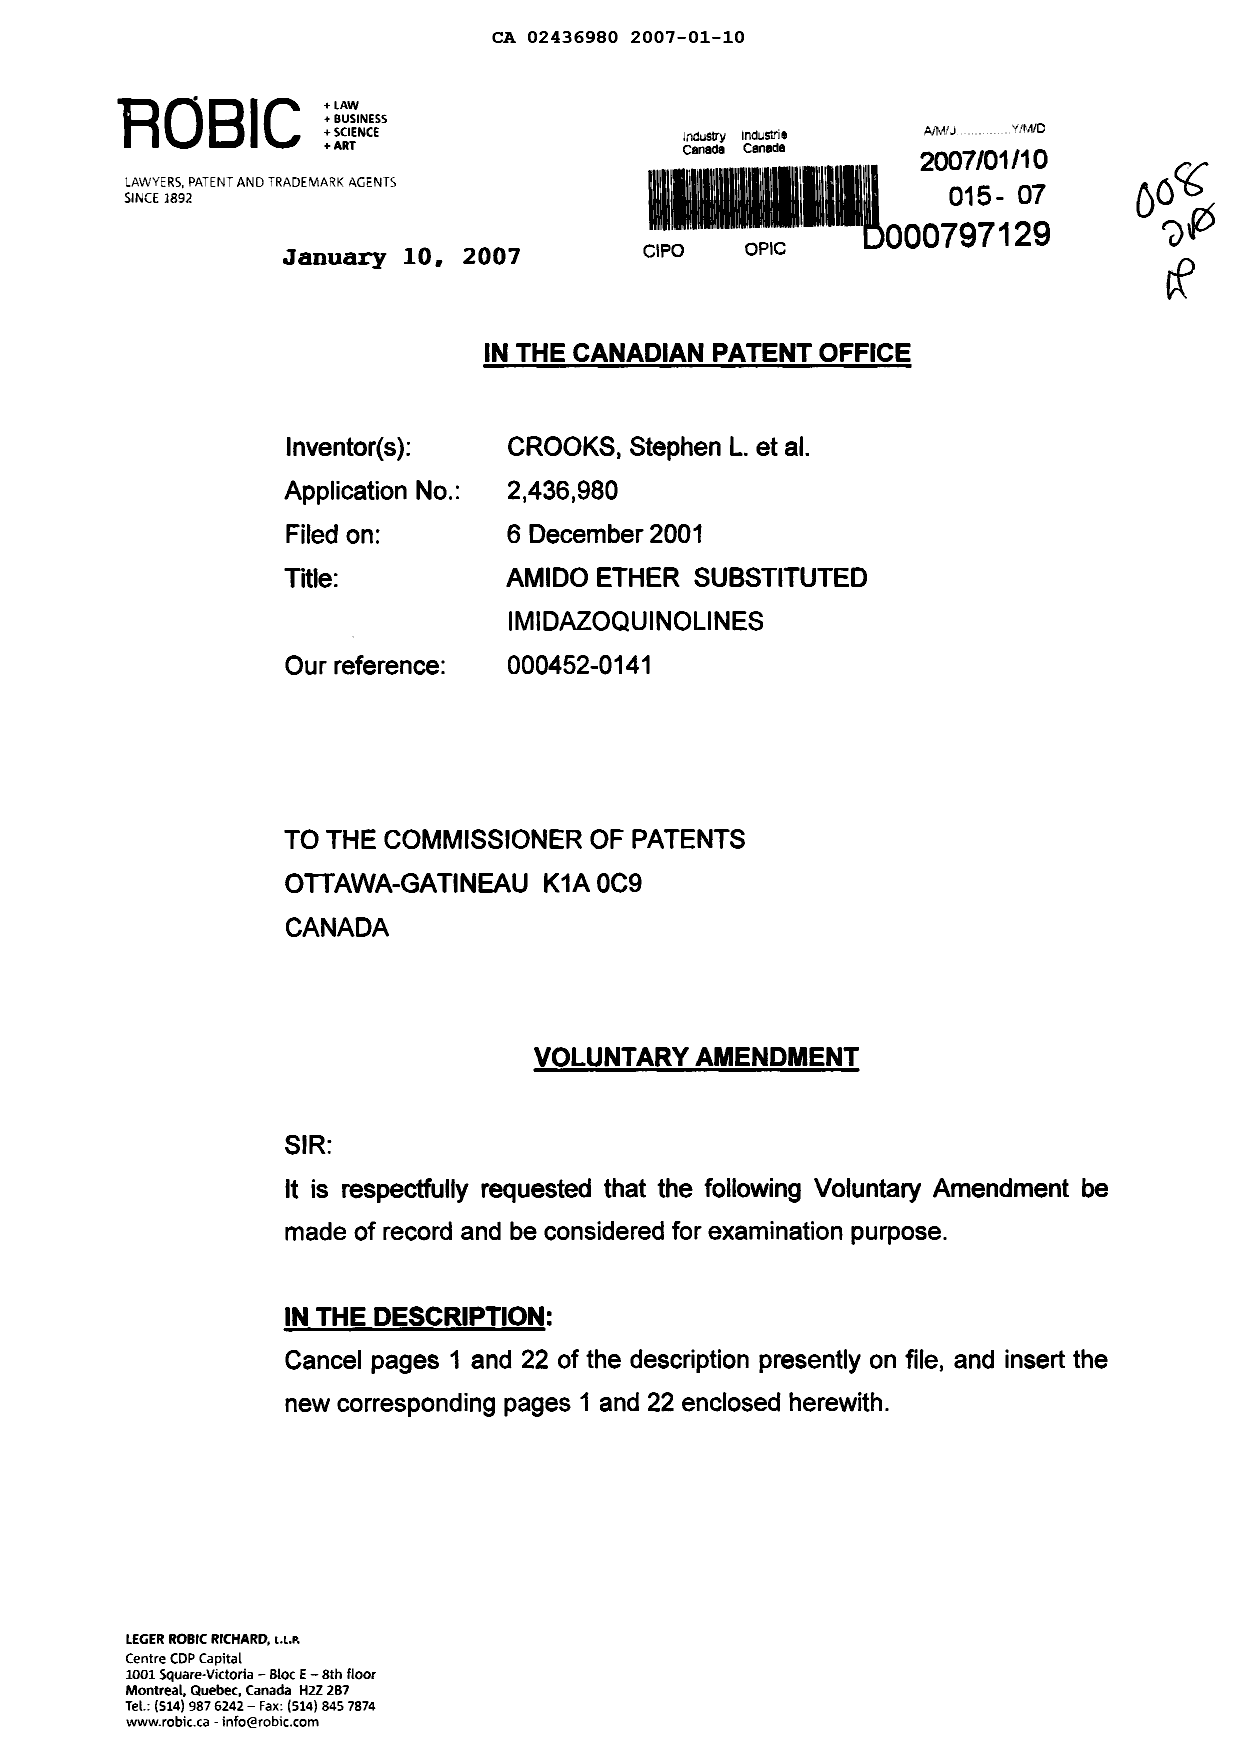 Document de brevet canadien 2436980. Poursuite-Amendment 20061210. Image 1 de 9